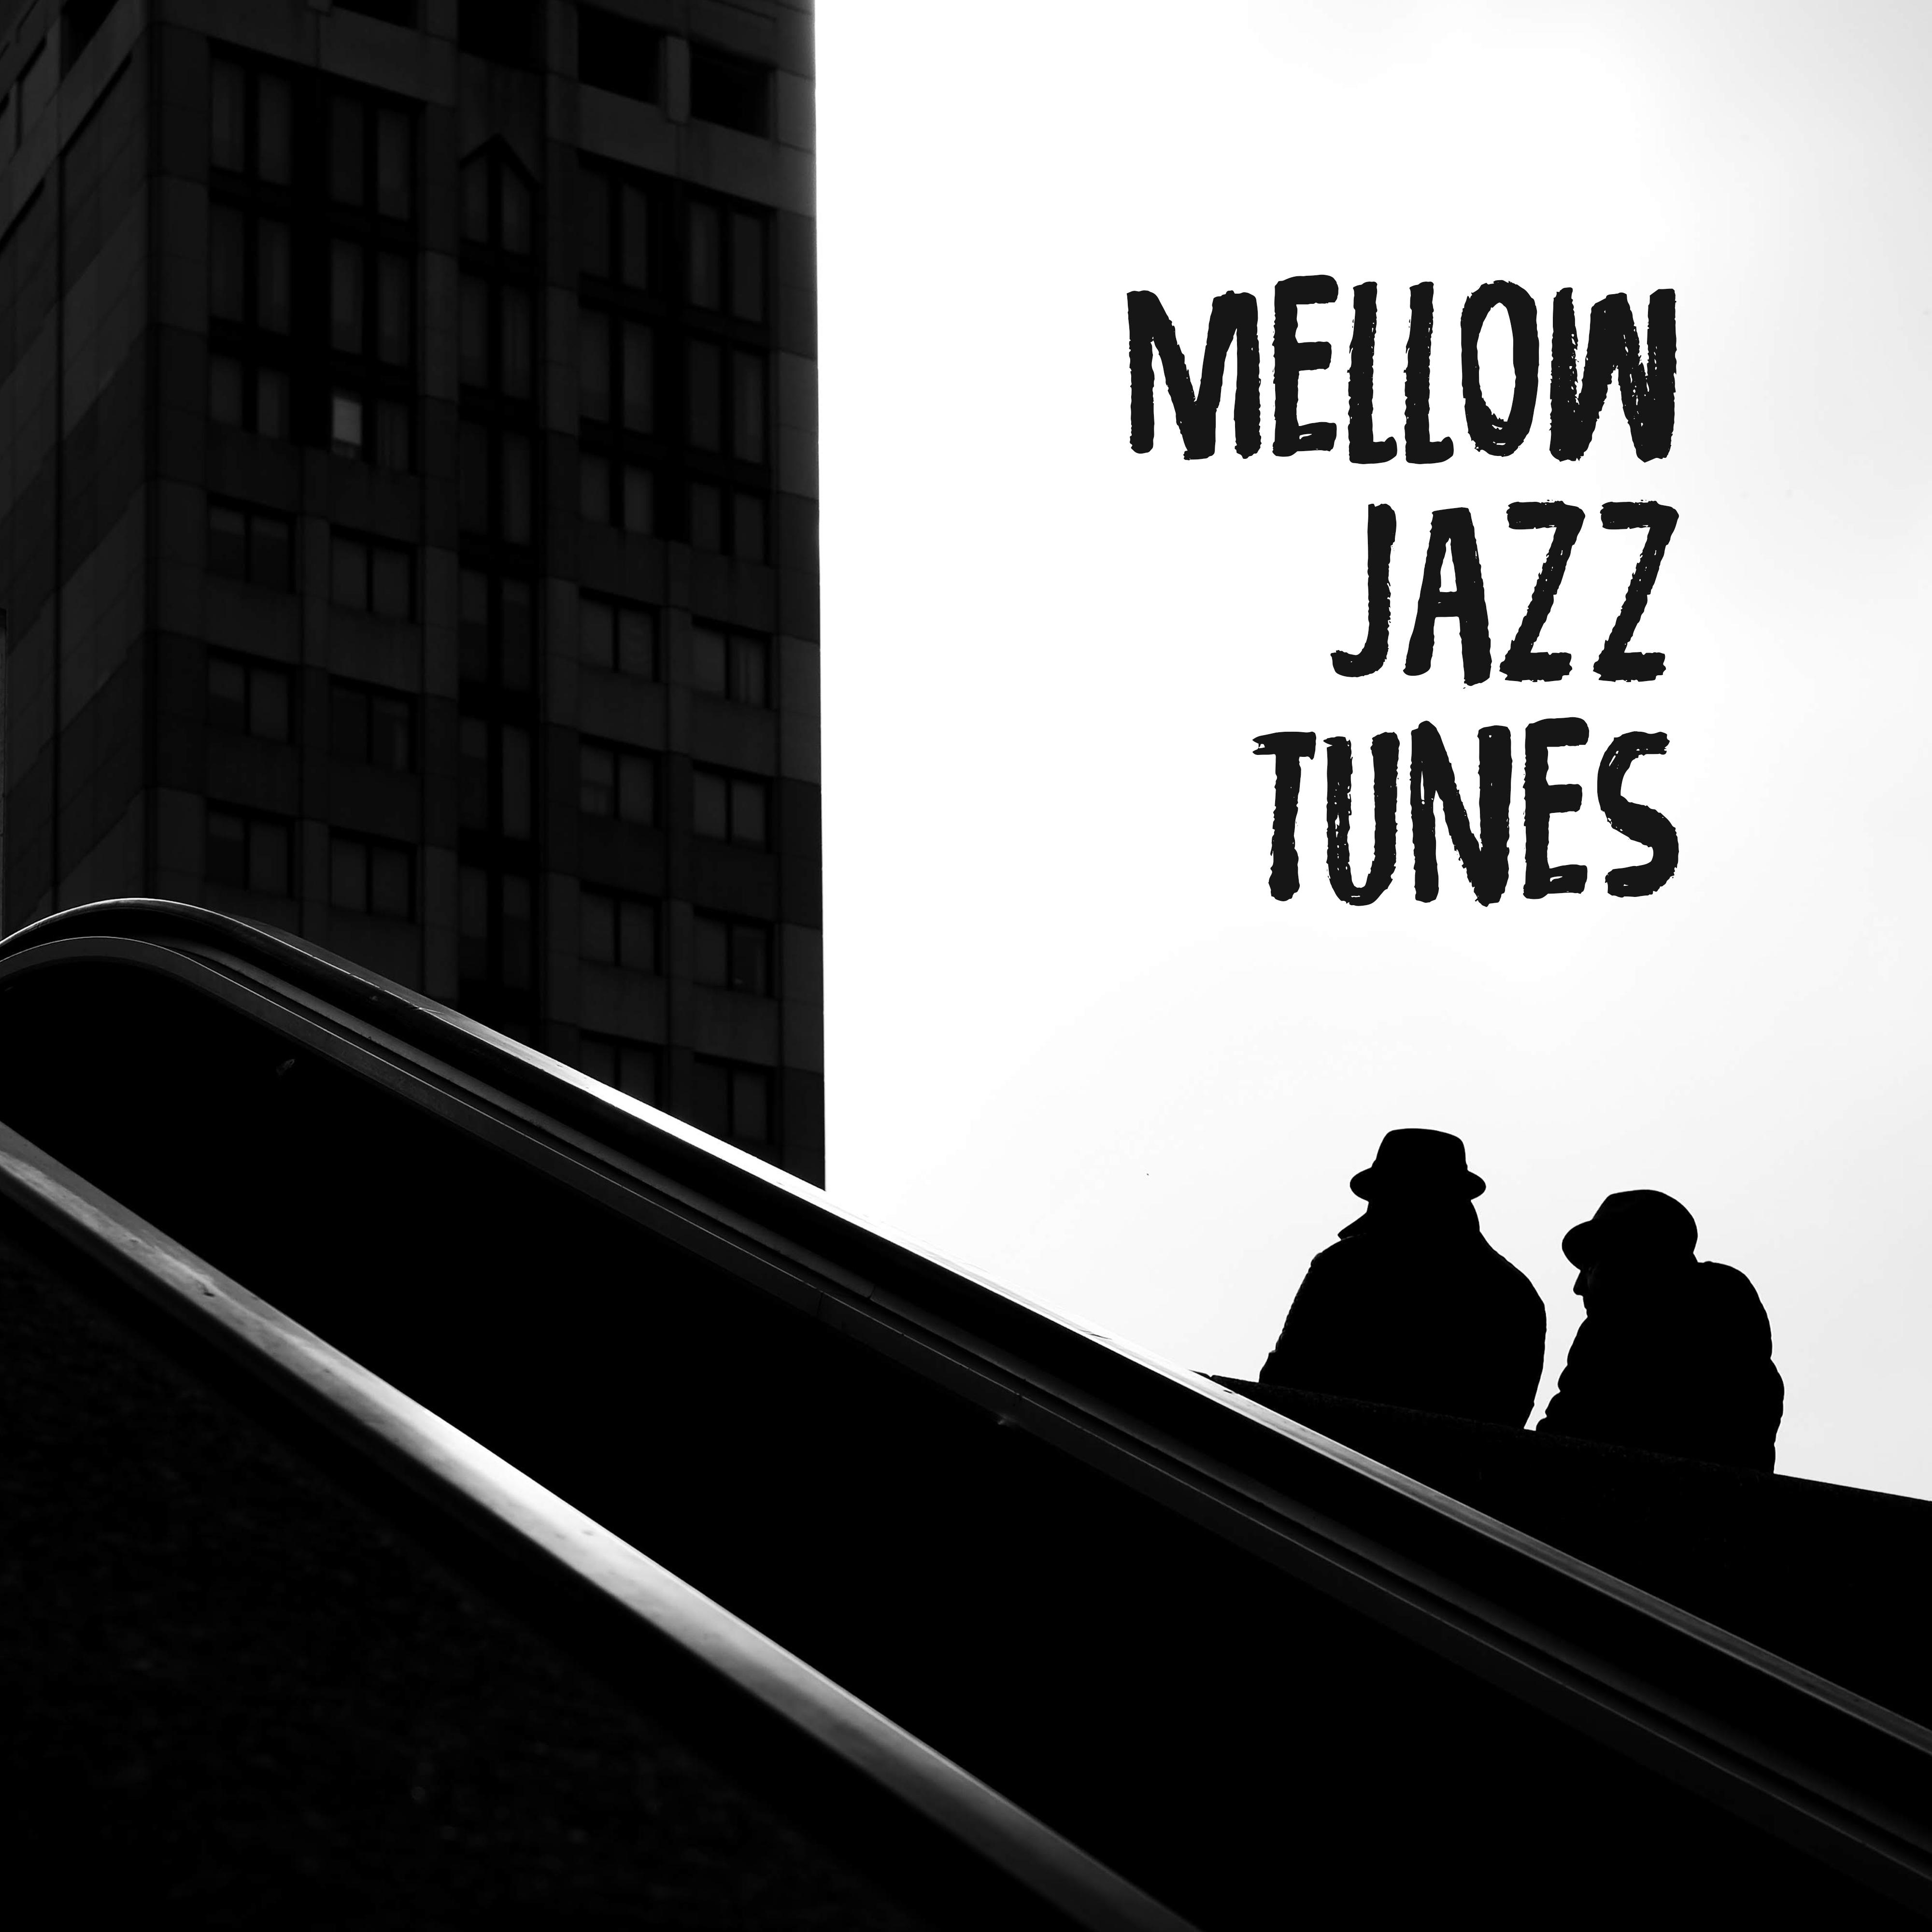 Mellow Jazz Tunes  Best Smooth Jazz for Relaxation, Sleep, Rest, Restaurant Music, Instrumental Jazz Music Ambient, Reduce Stress